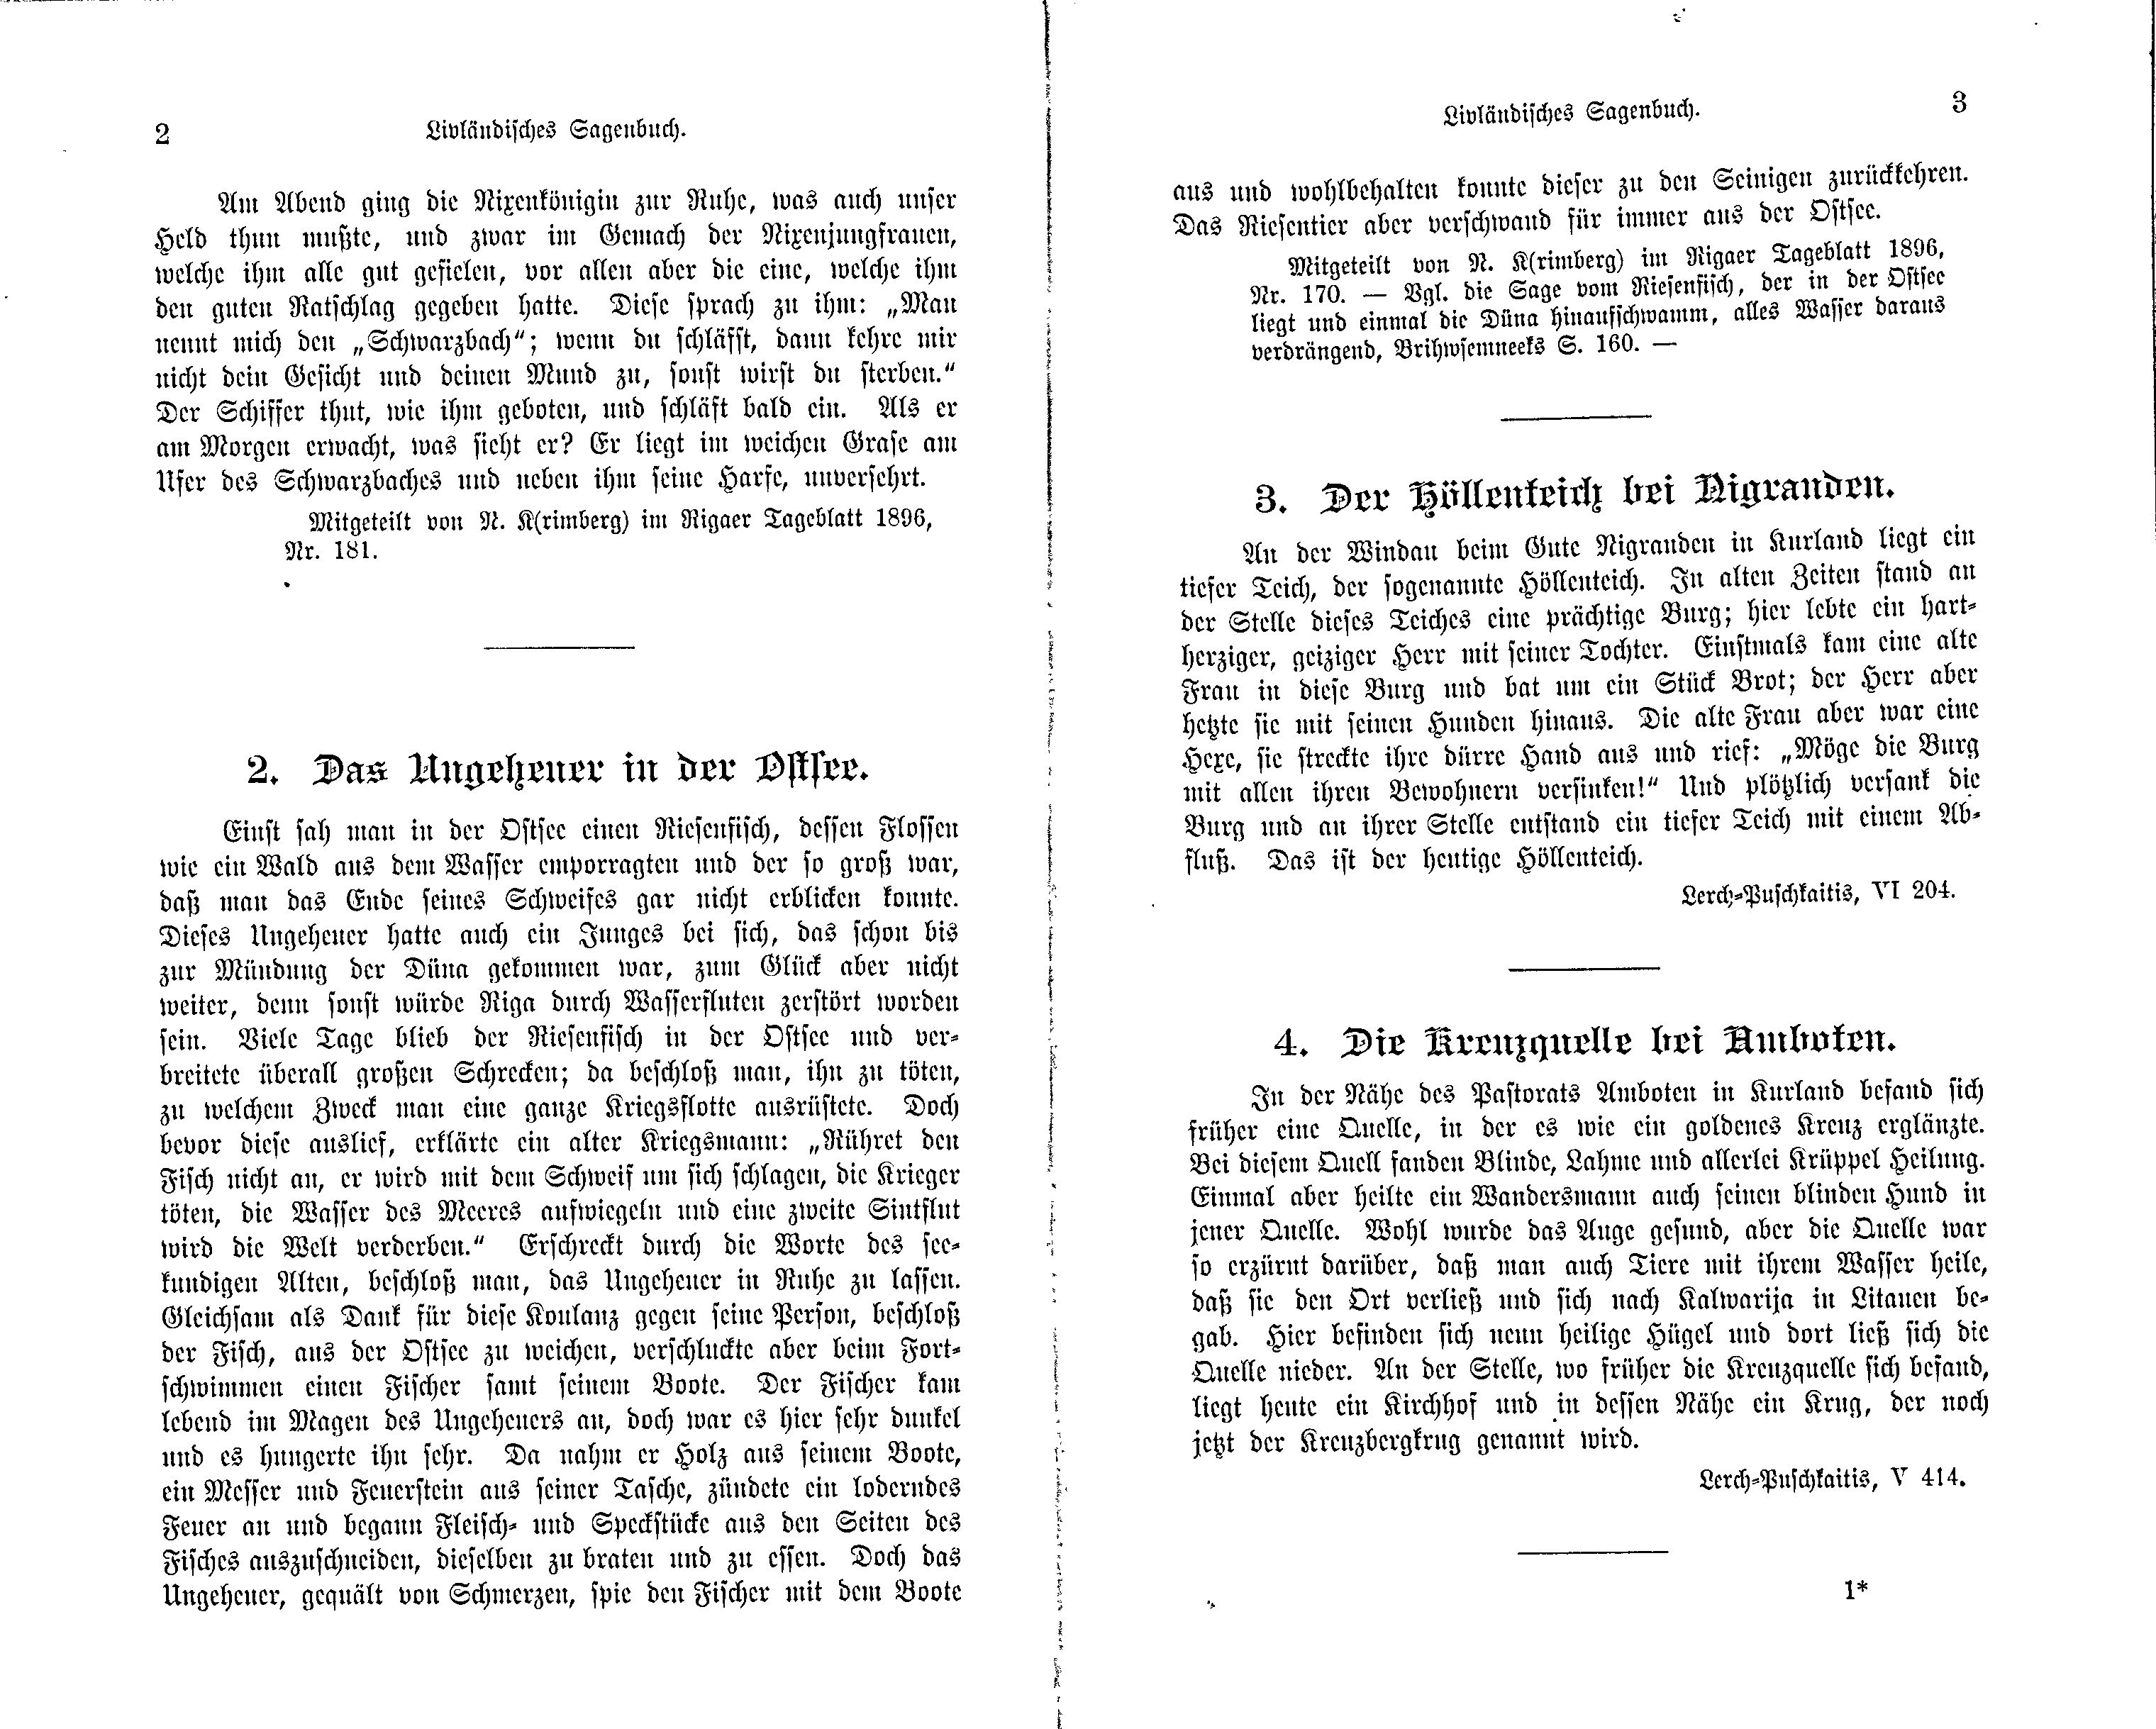 Die Kreuzquelle bei Amboten (1897) | 1. (2-3) Main body of text